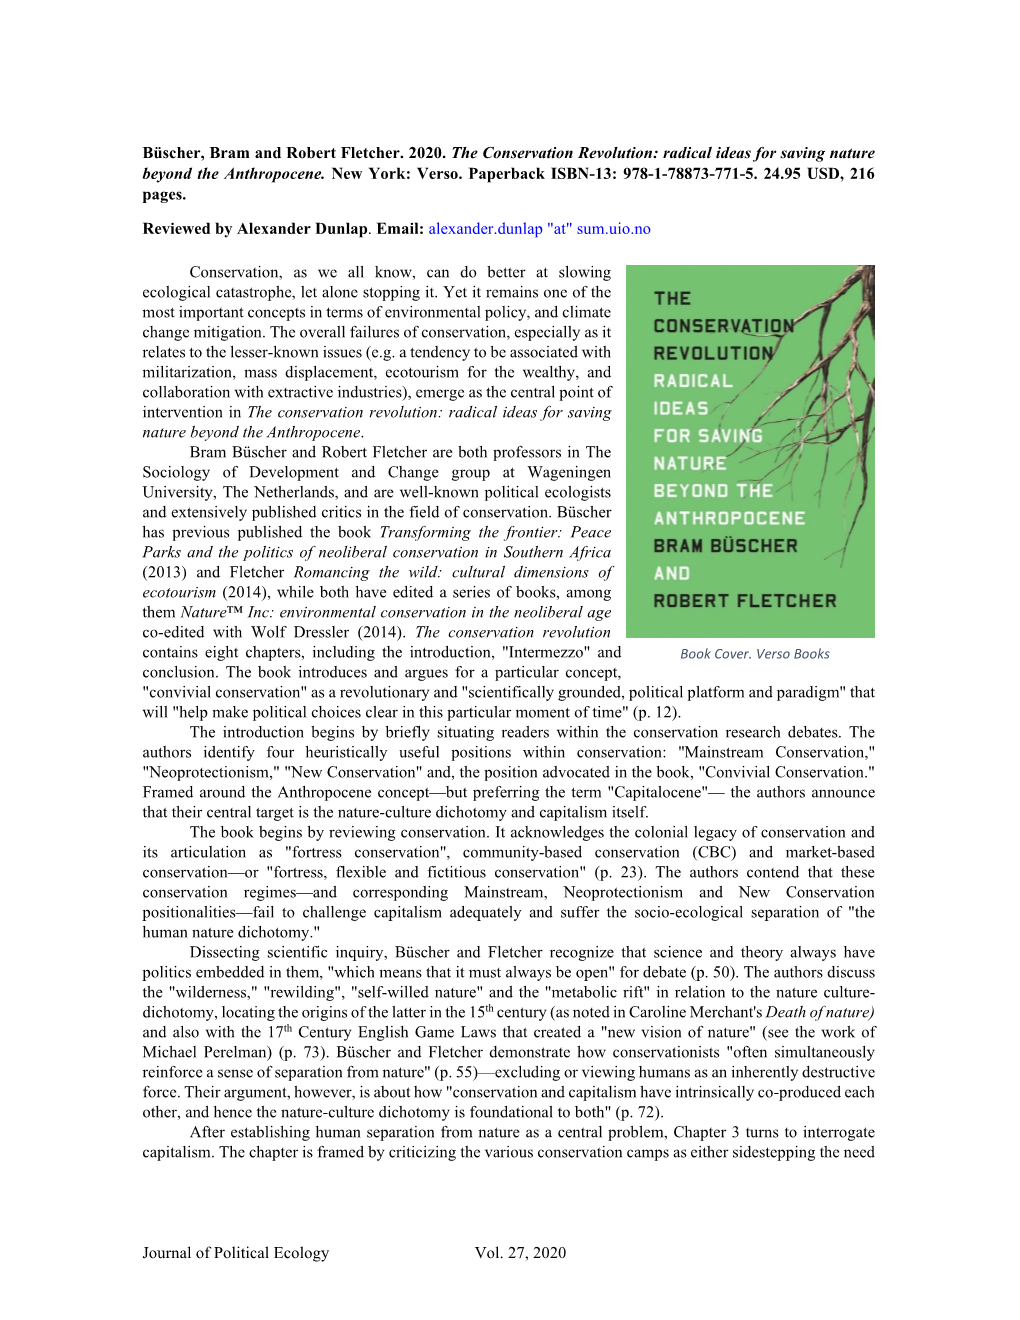 Journal of Political Ecology Vol. 27, 2020 Büscher, Bram and Robert